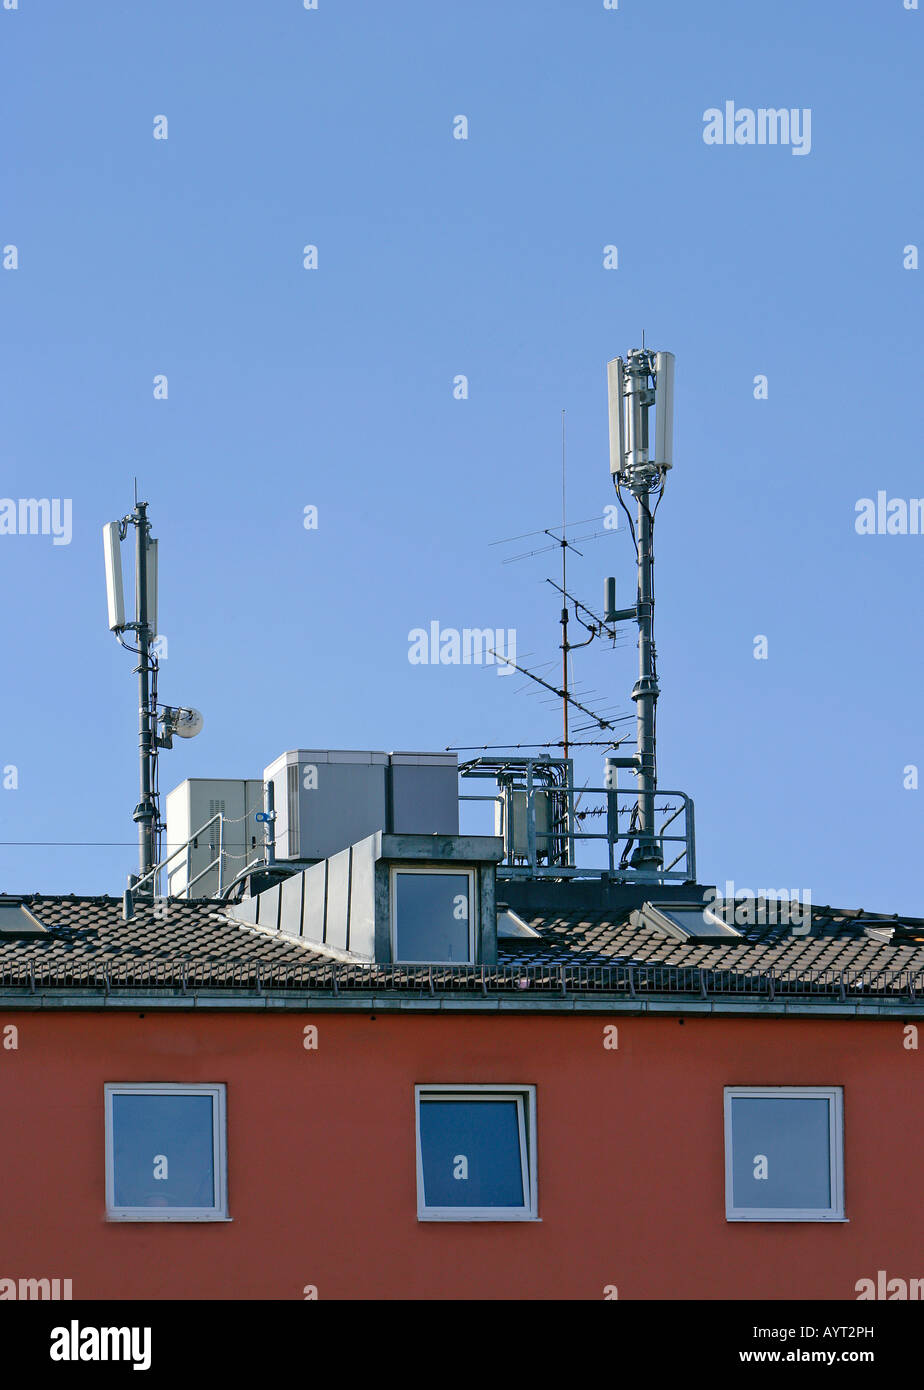 5g antenne auf einem Hausdach Stock Photo